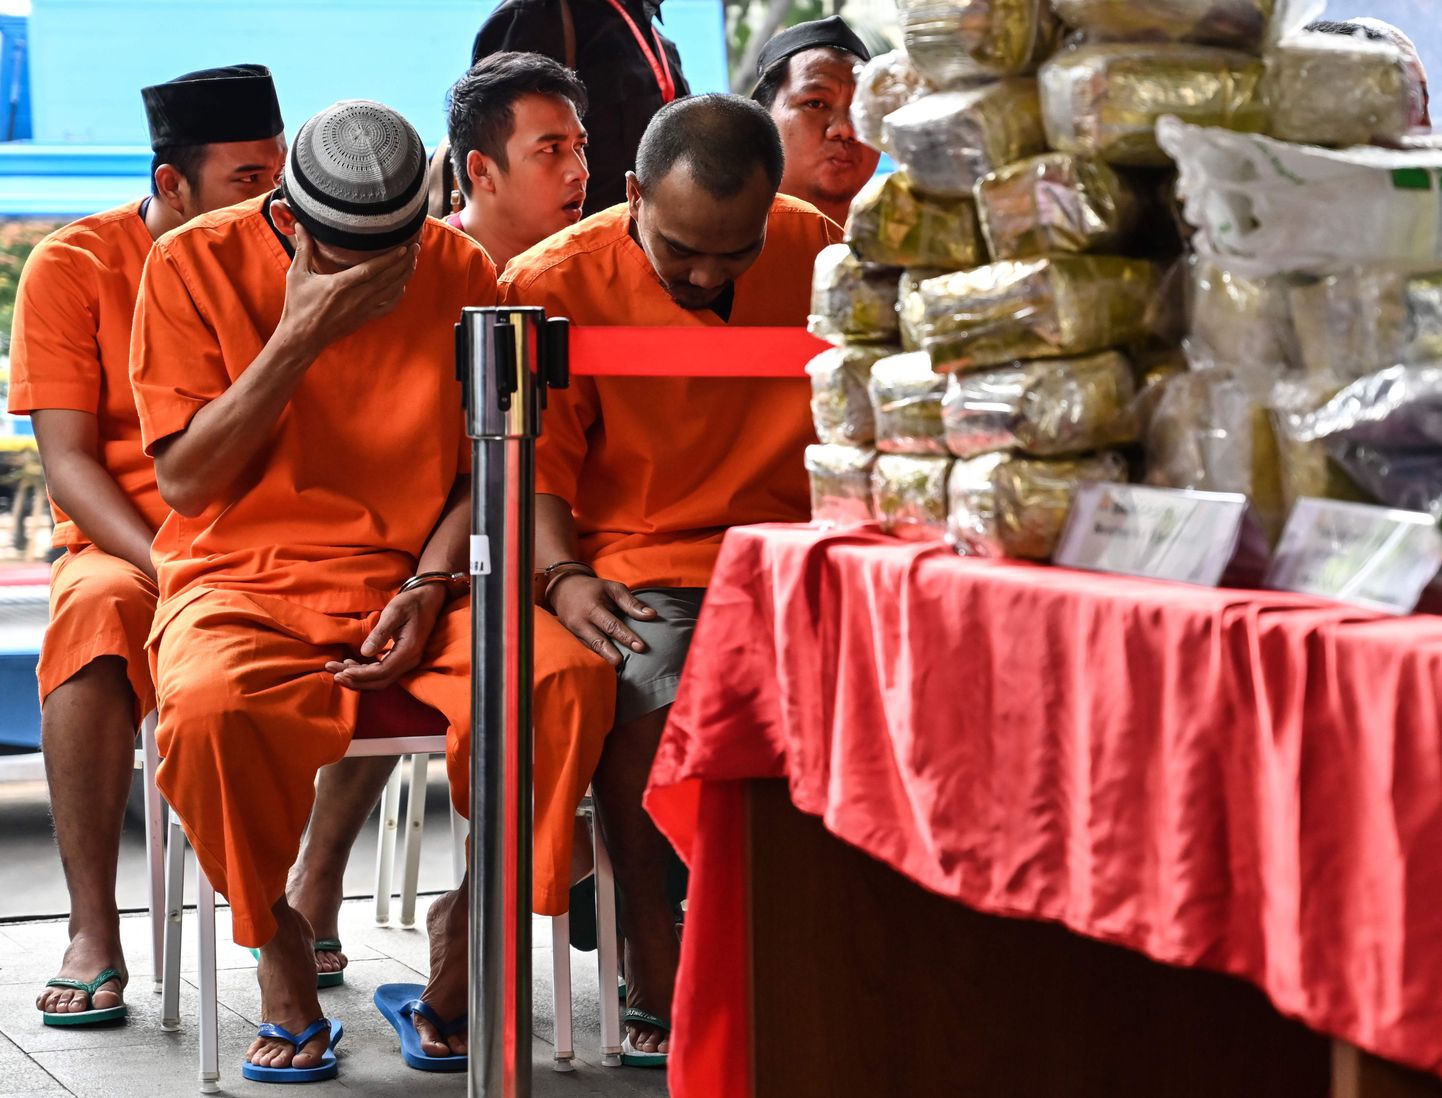 Vaatamata karmidele karistustele smuugeldamise eest on narkootikumide tarbimine Aasias tõusuteel.